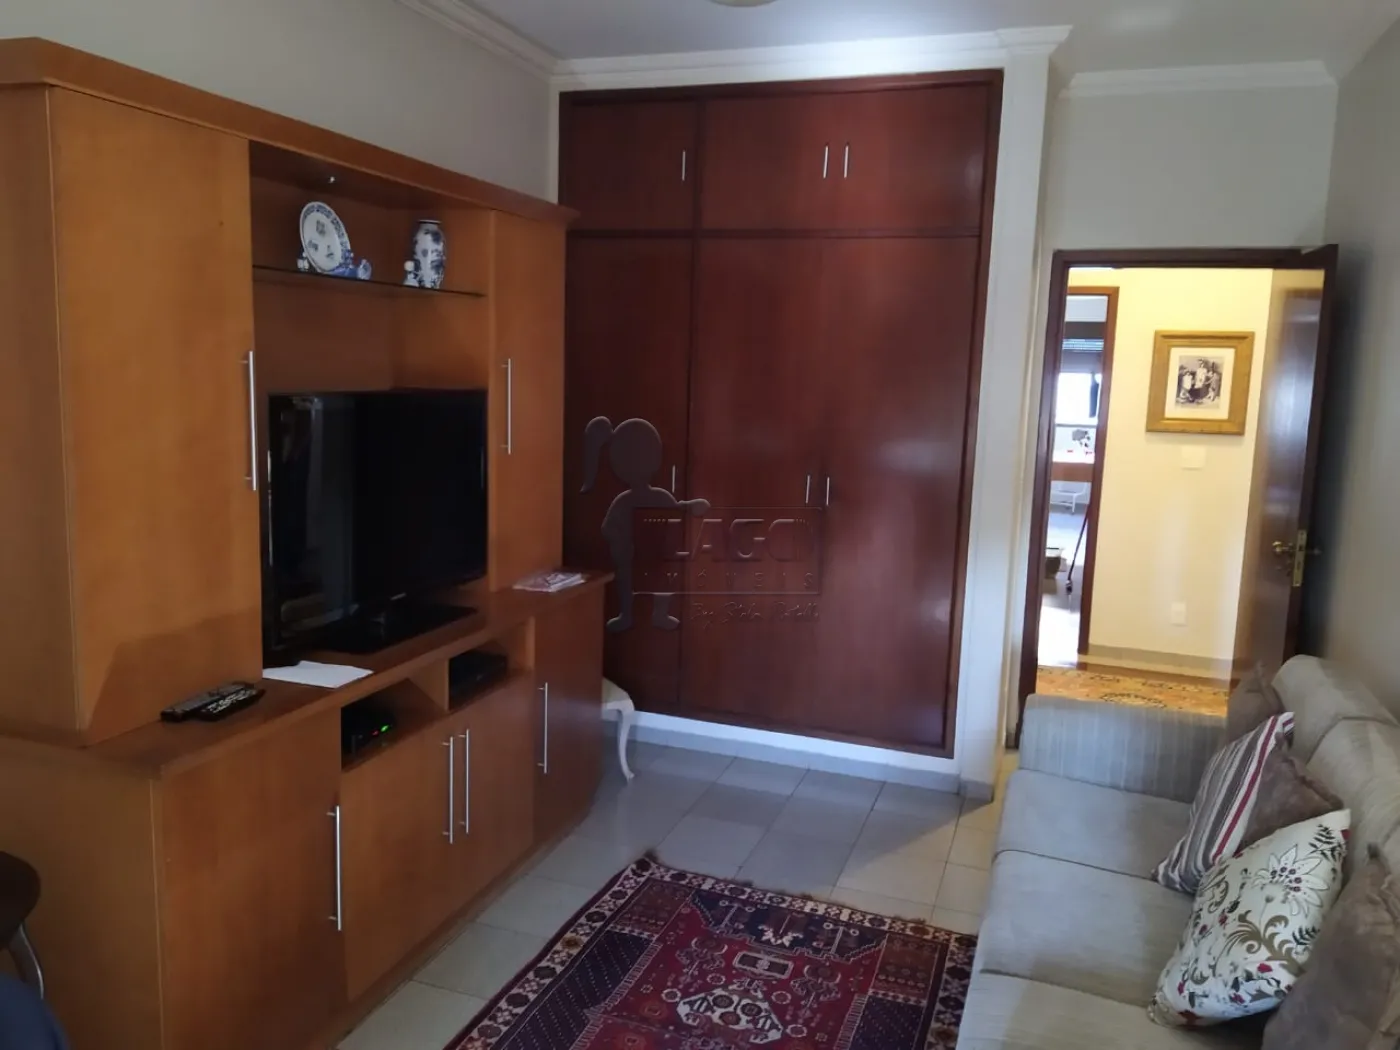 Comprar Apartamento / Padrão em Ribeirão Preto R$ 640.000,00 - Foto 19